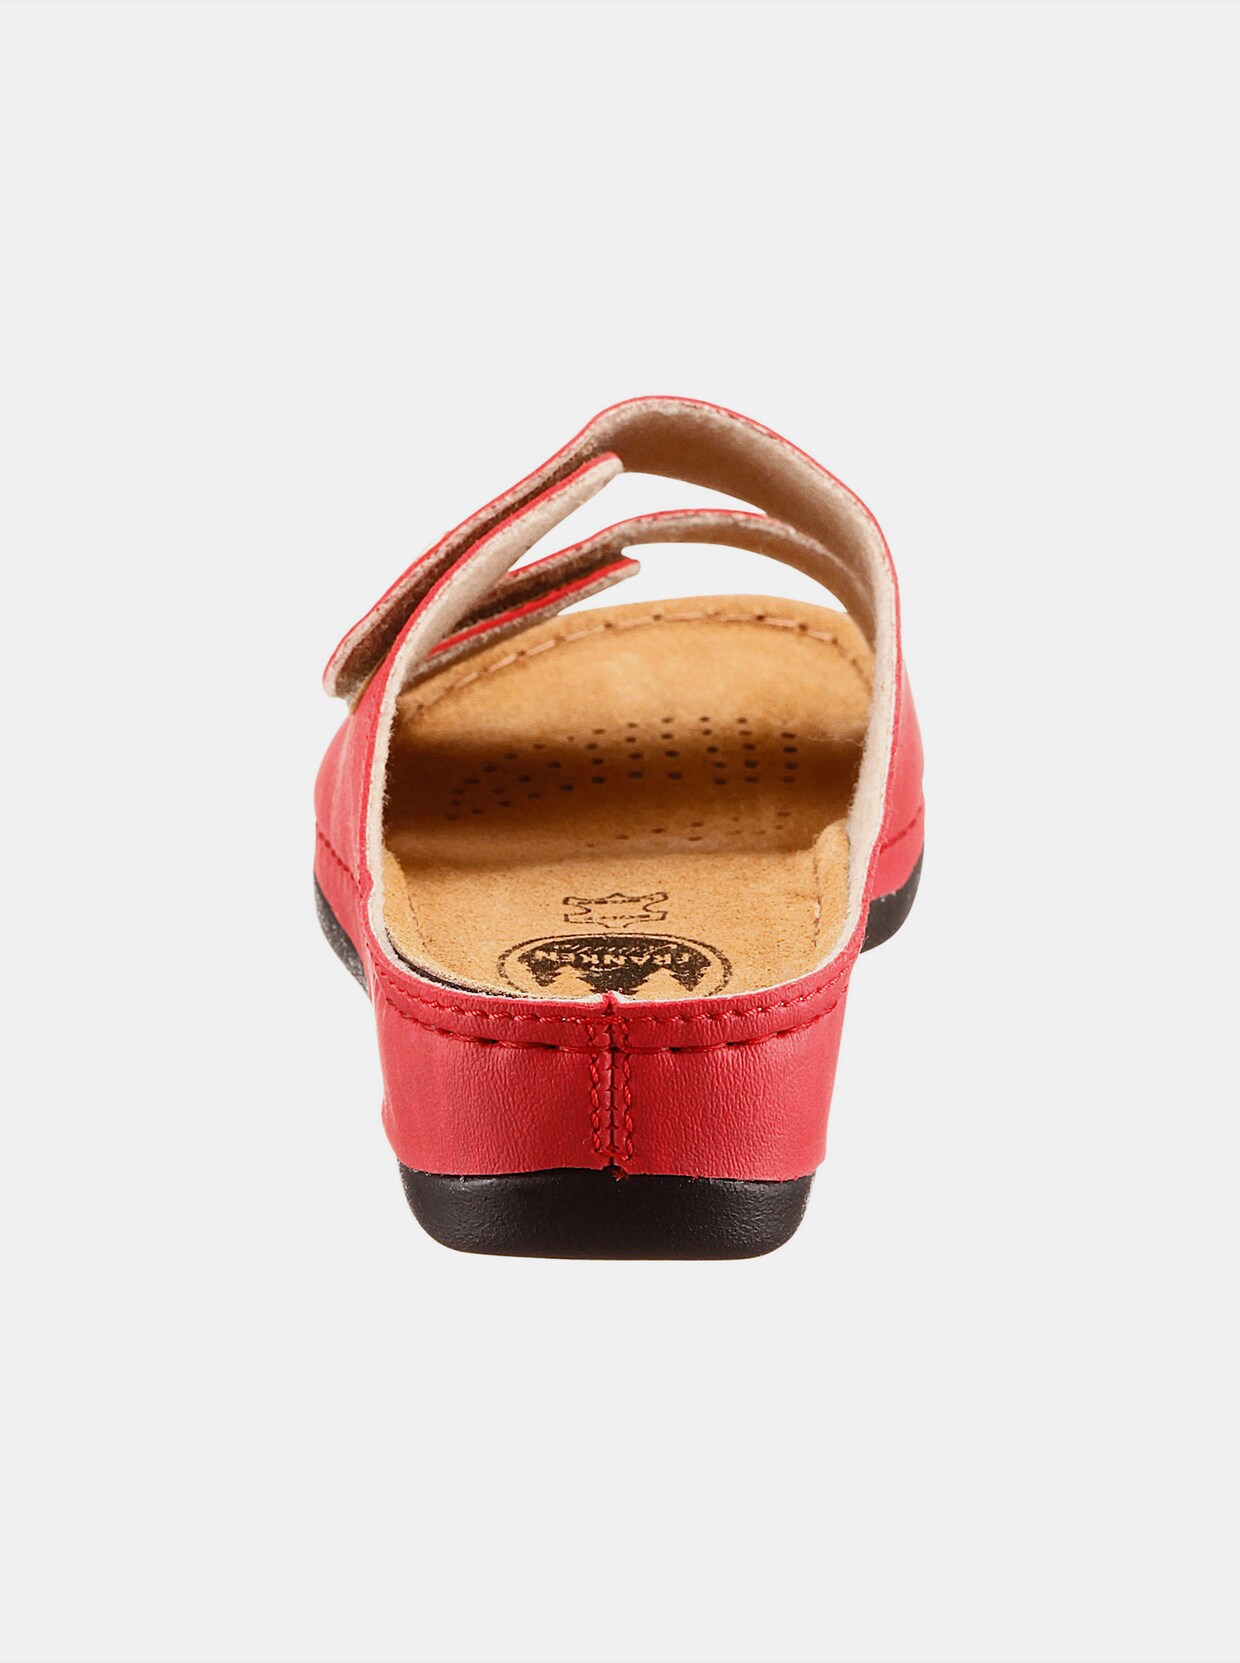 Franken Schuhe Pantolette - rot